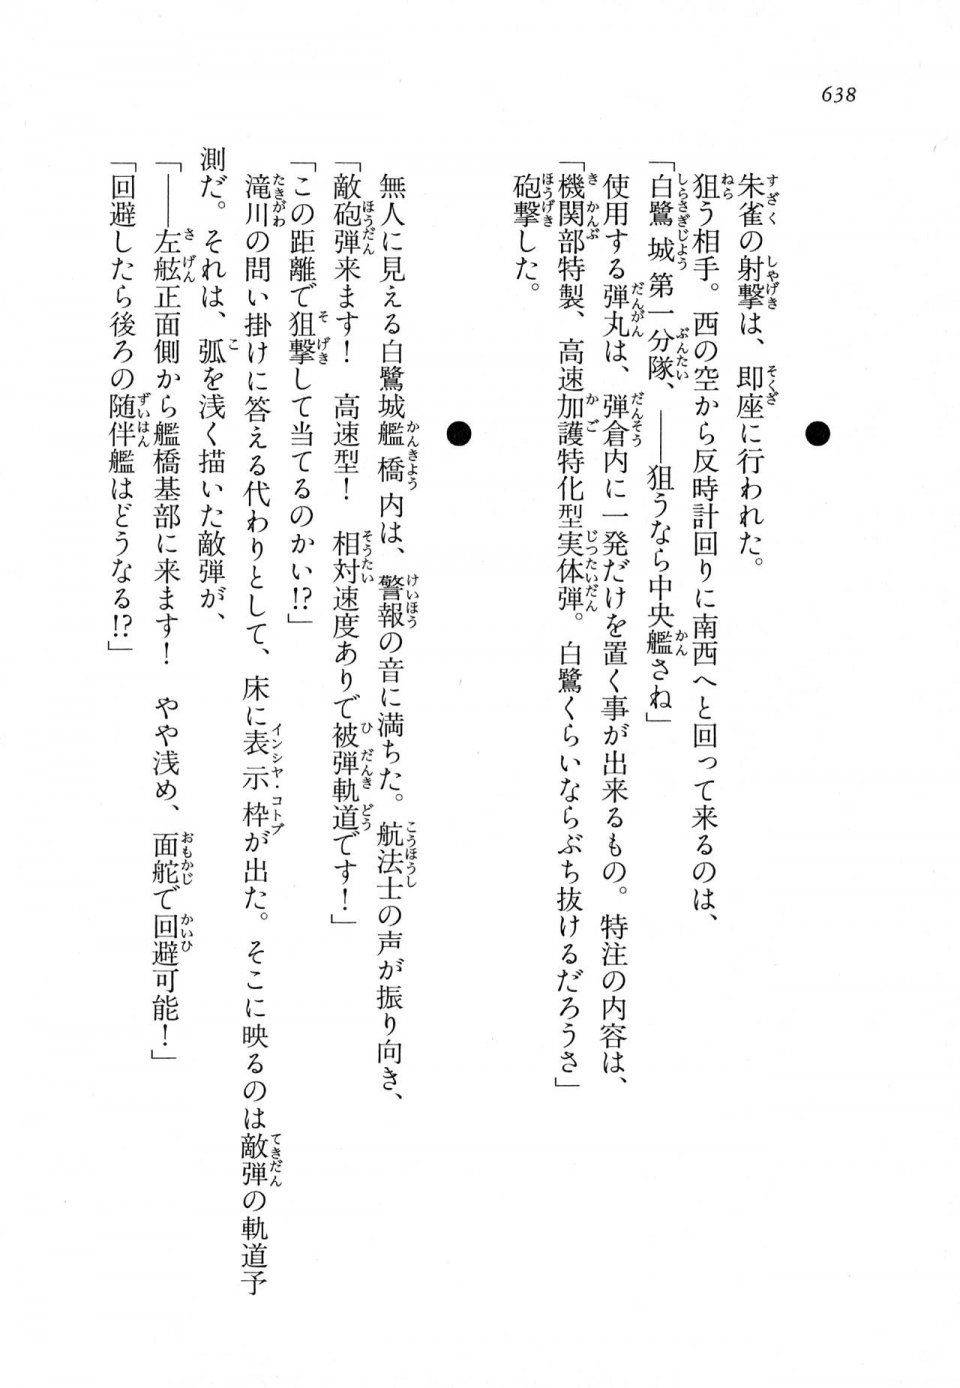 Kyoukai Senjou no Horizon LN Vol 11(5A) - Photo #638